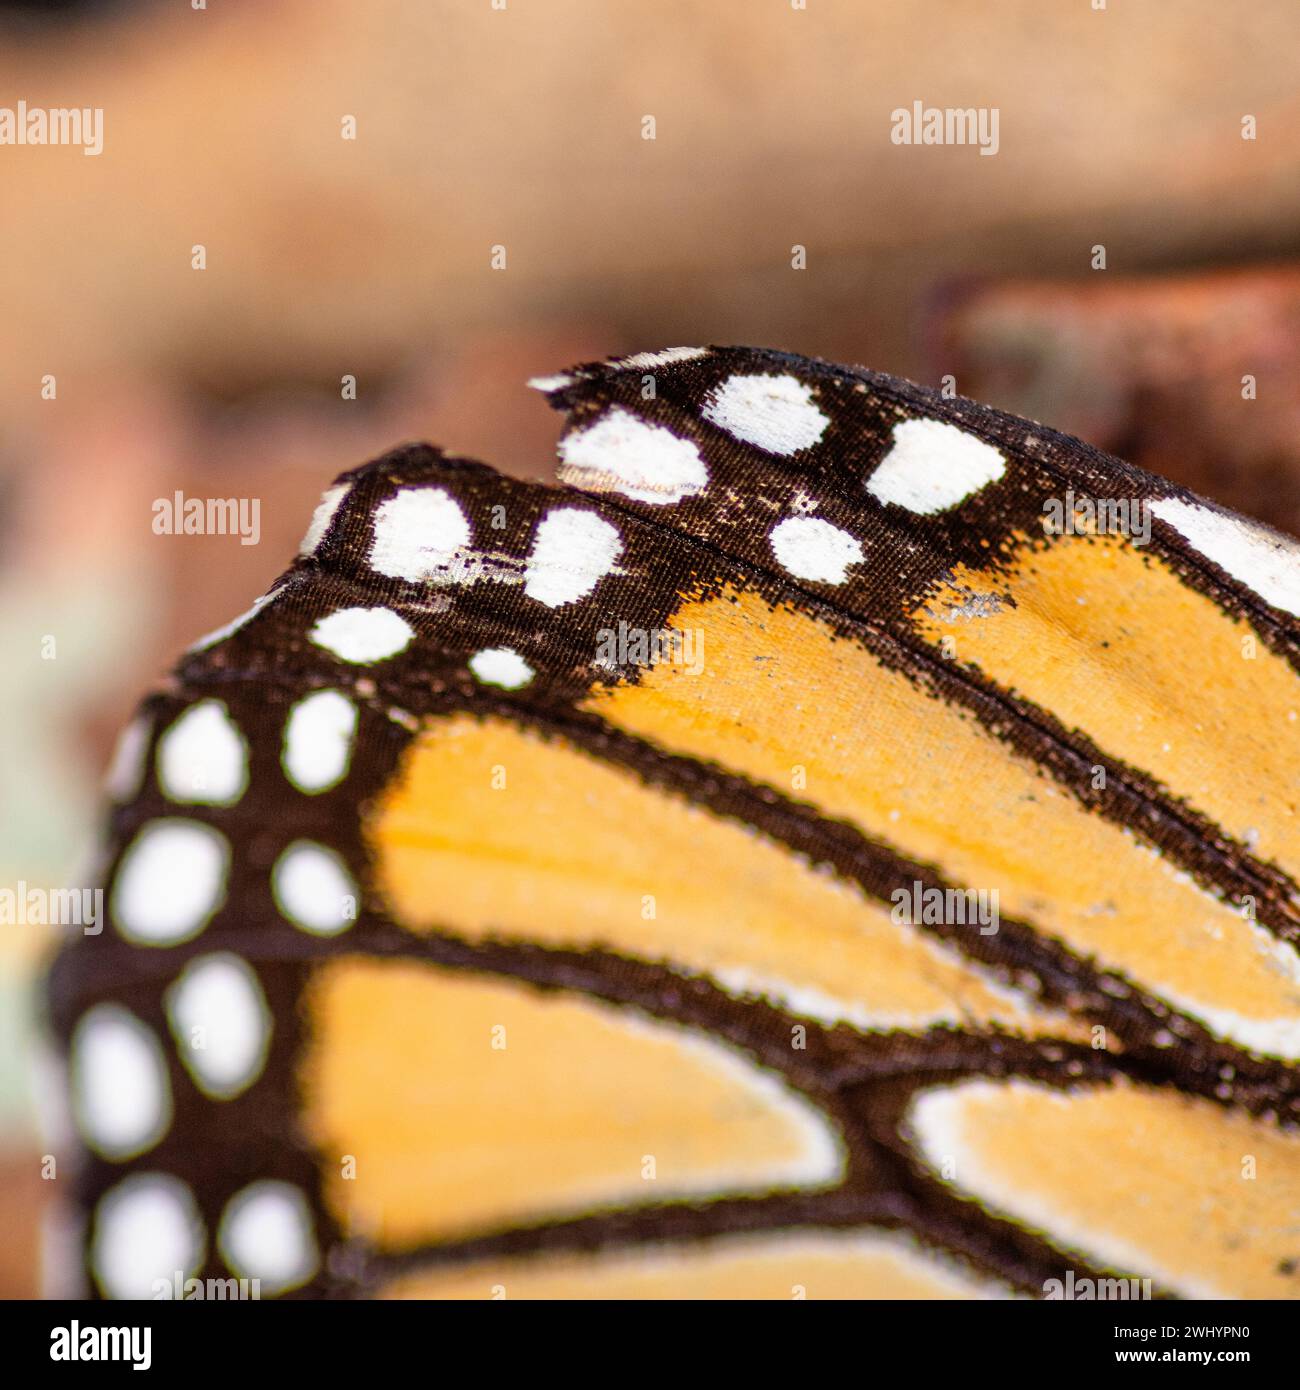 Macro, Monarch Butterfly, Wing, Closeup, dettaglio, arancione, nero, bianco, contrasti, bilance a farfalla, primi piani estremi, Macro Photography Foto Stock